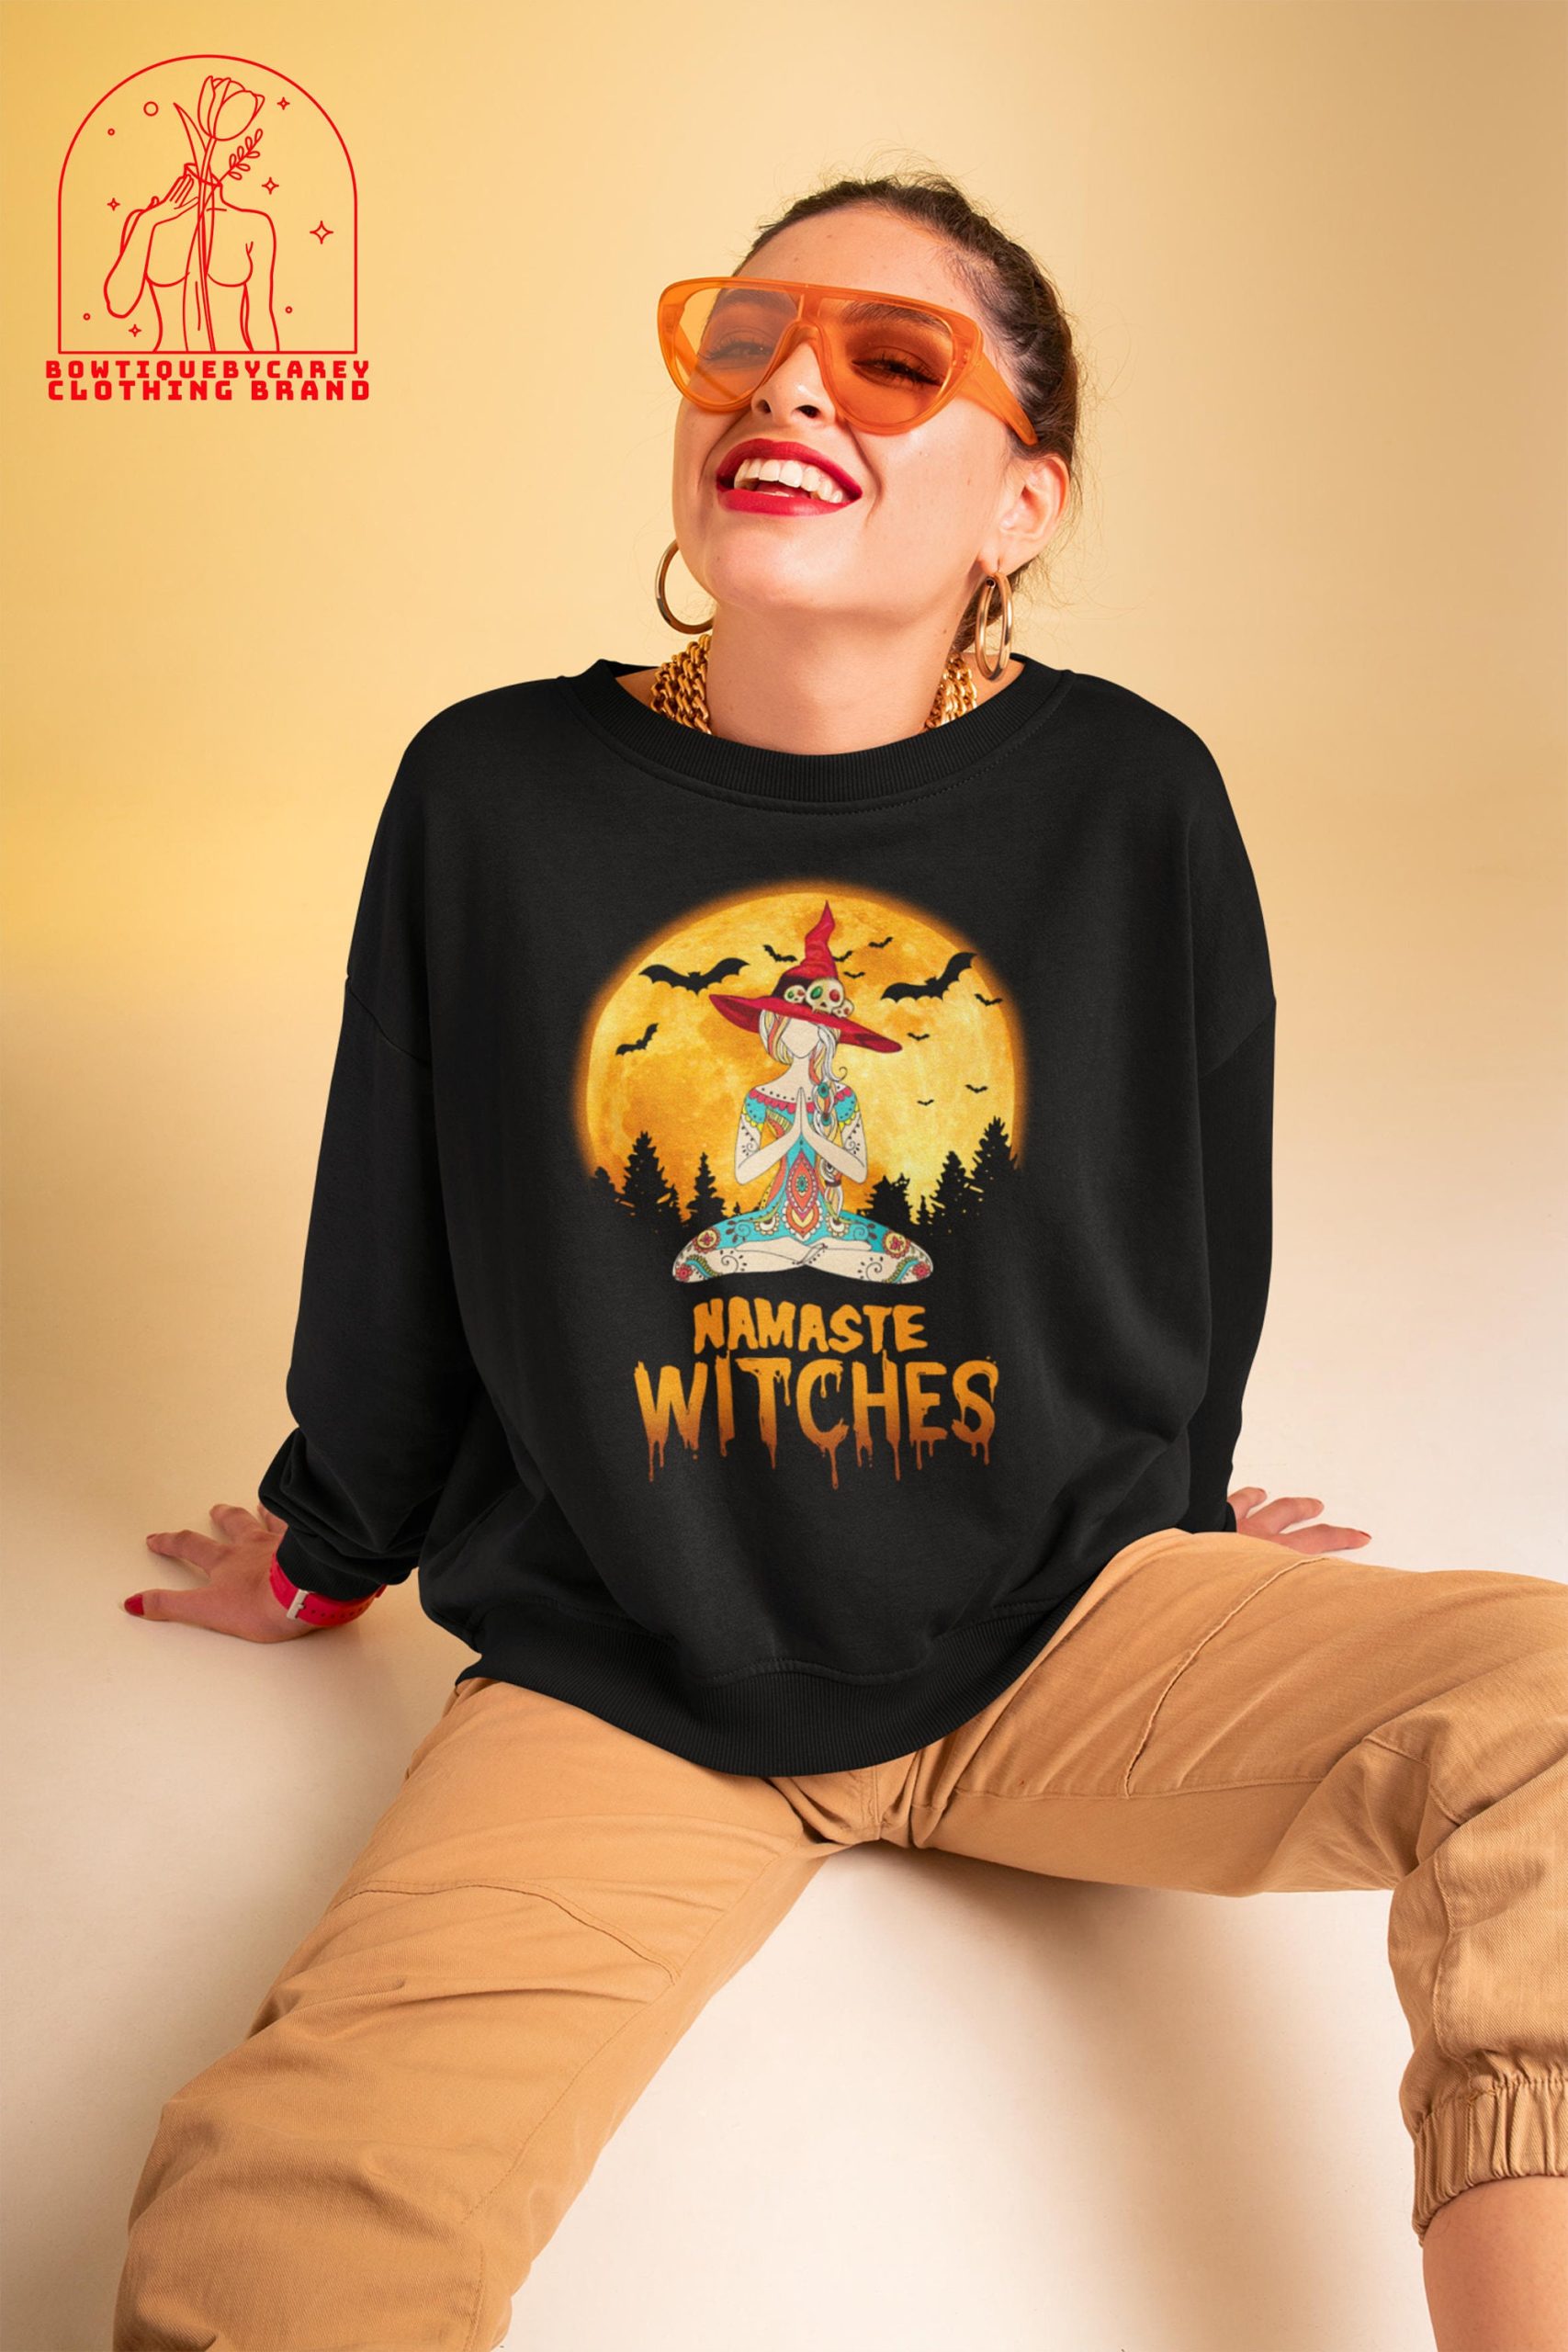 Namaste Witches Yoga Girl Full Moon Witch Yoga Meditation Halloween Unisex T-Shirt